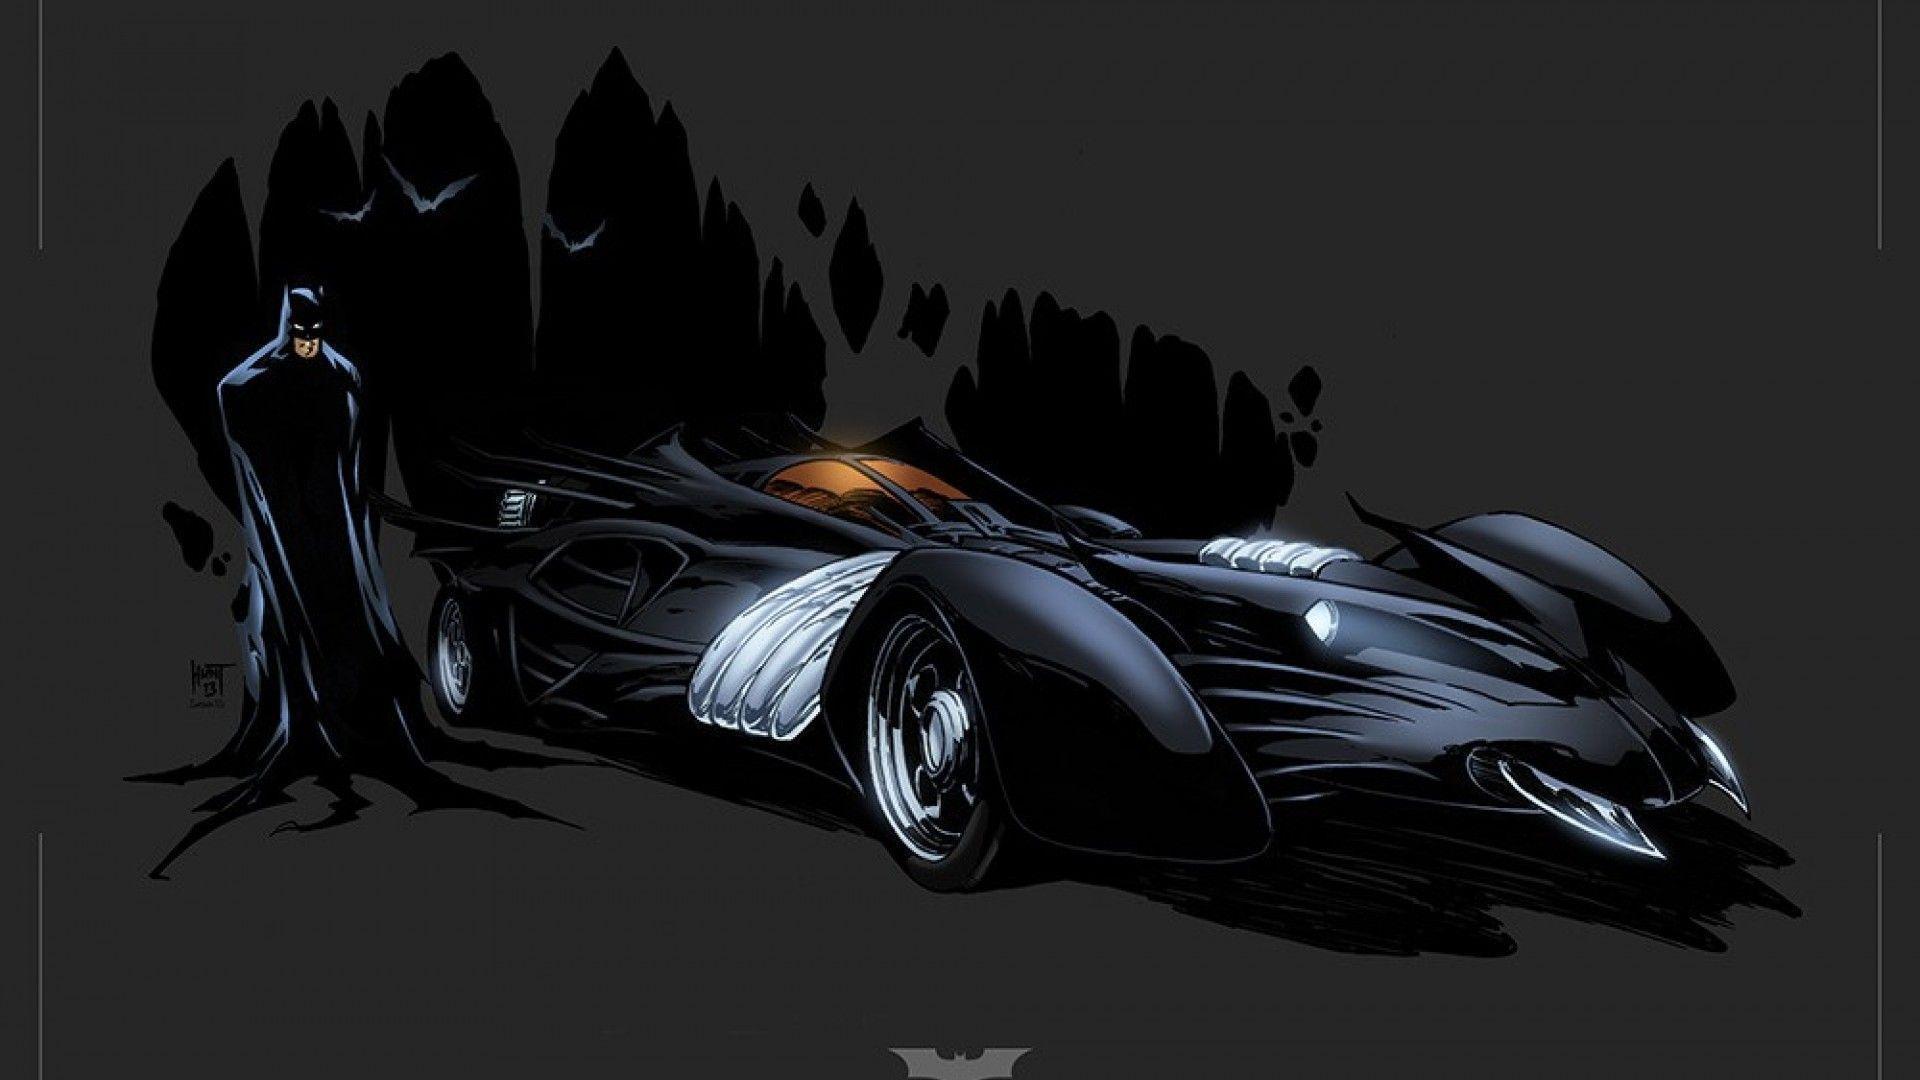 Batmobile Wallpapers  Top 30 Best Batmobile Wallpapers  HQ 